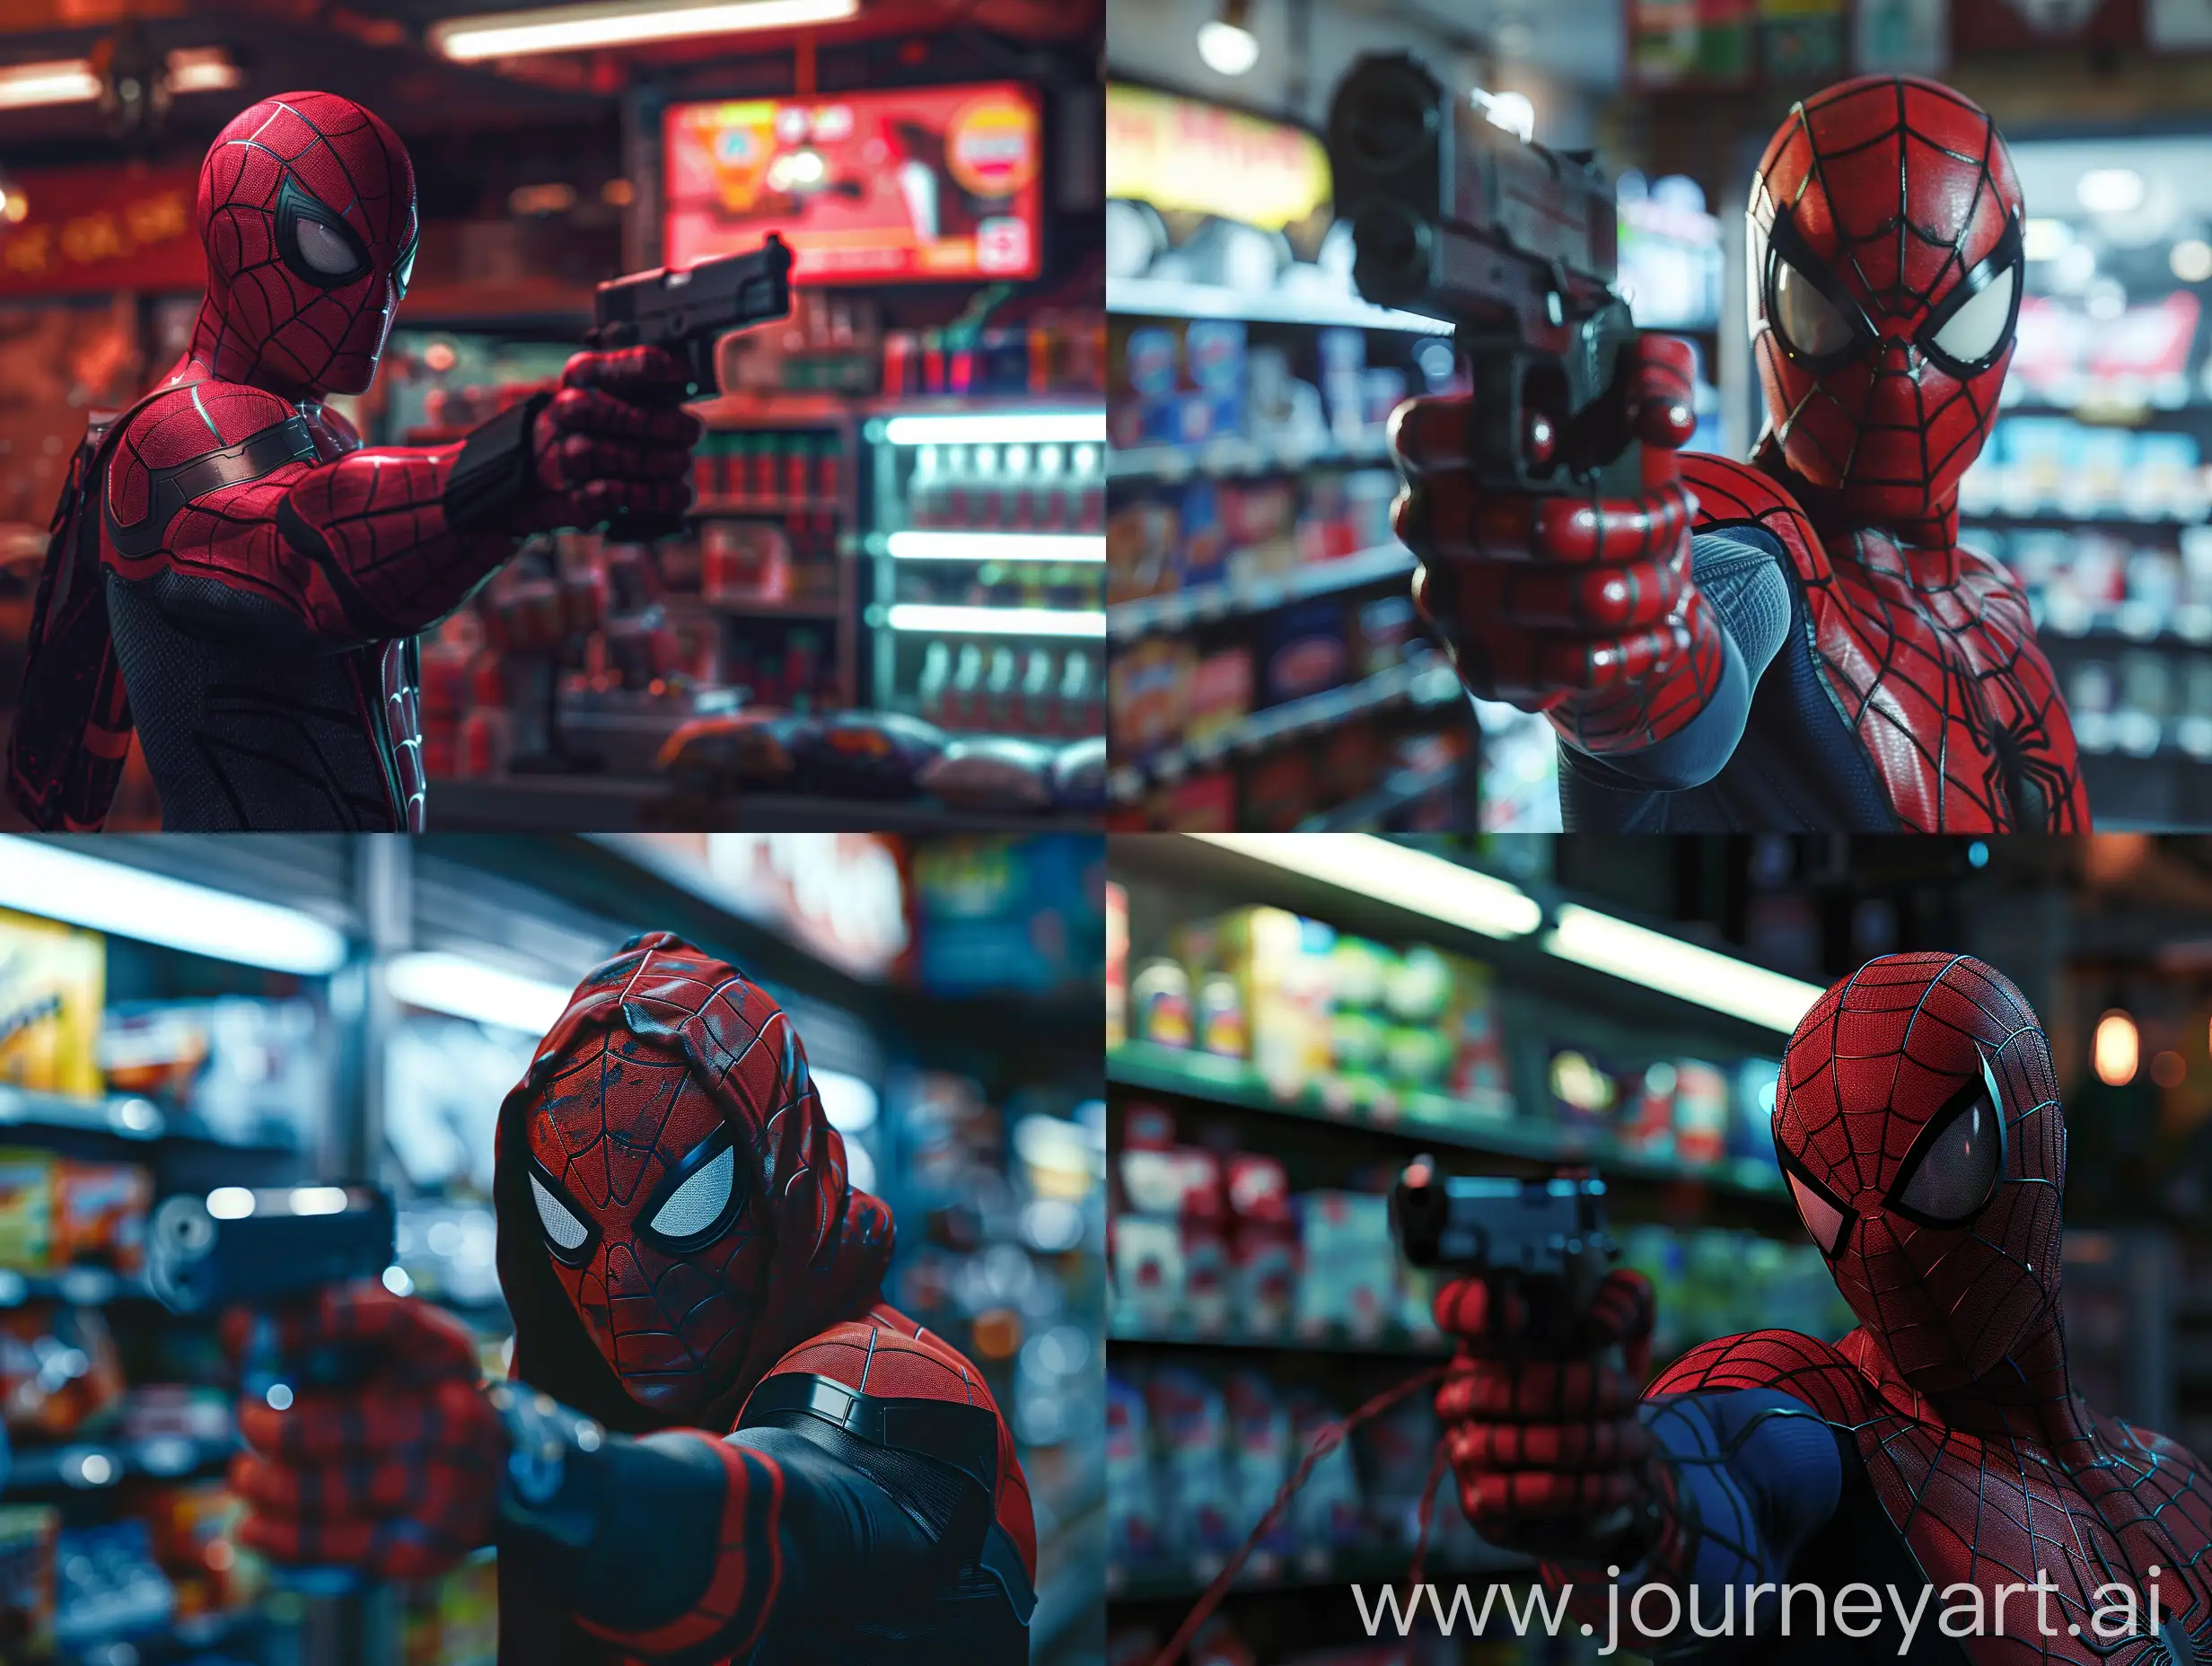 Человек паук грабит магазин пистолетом, задний фон товары, ночное время суток, 8к, реалистично, острый фокус, супер детализация, максимум деталей